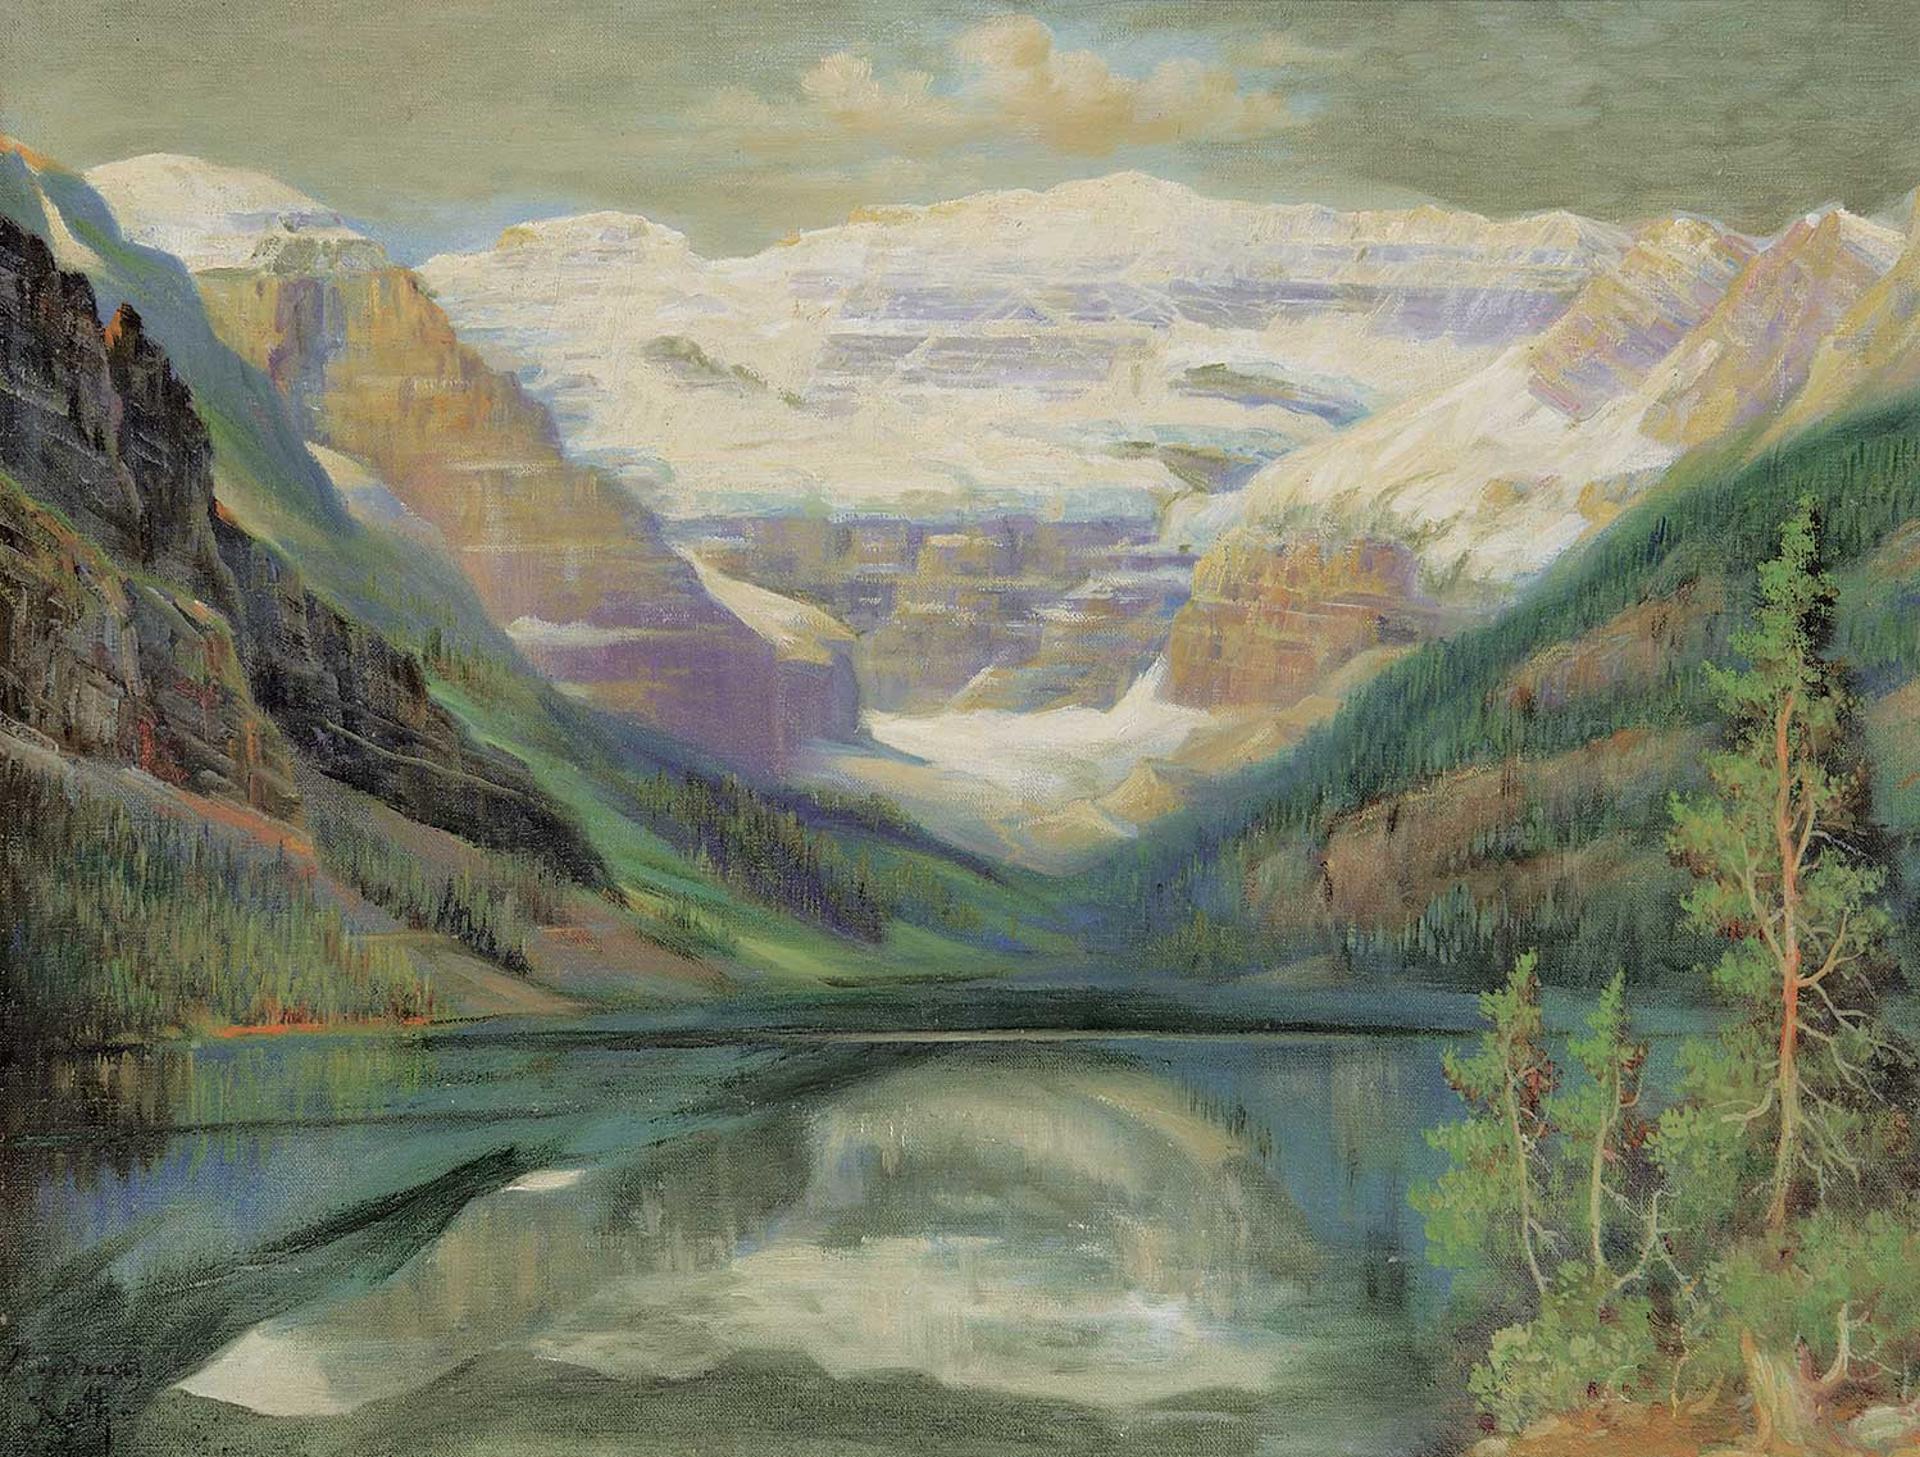 Andreas Roth (1872-1949) - Lake Louise, Alberta [Reflections]